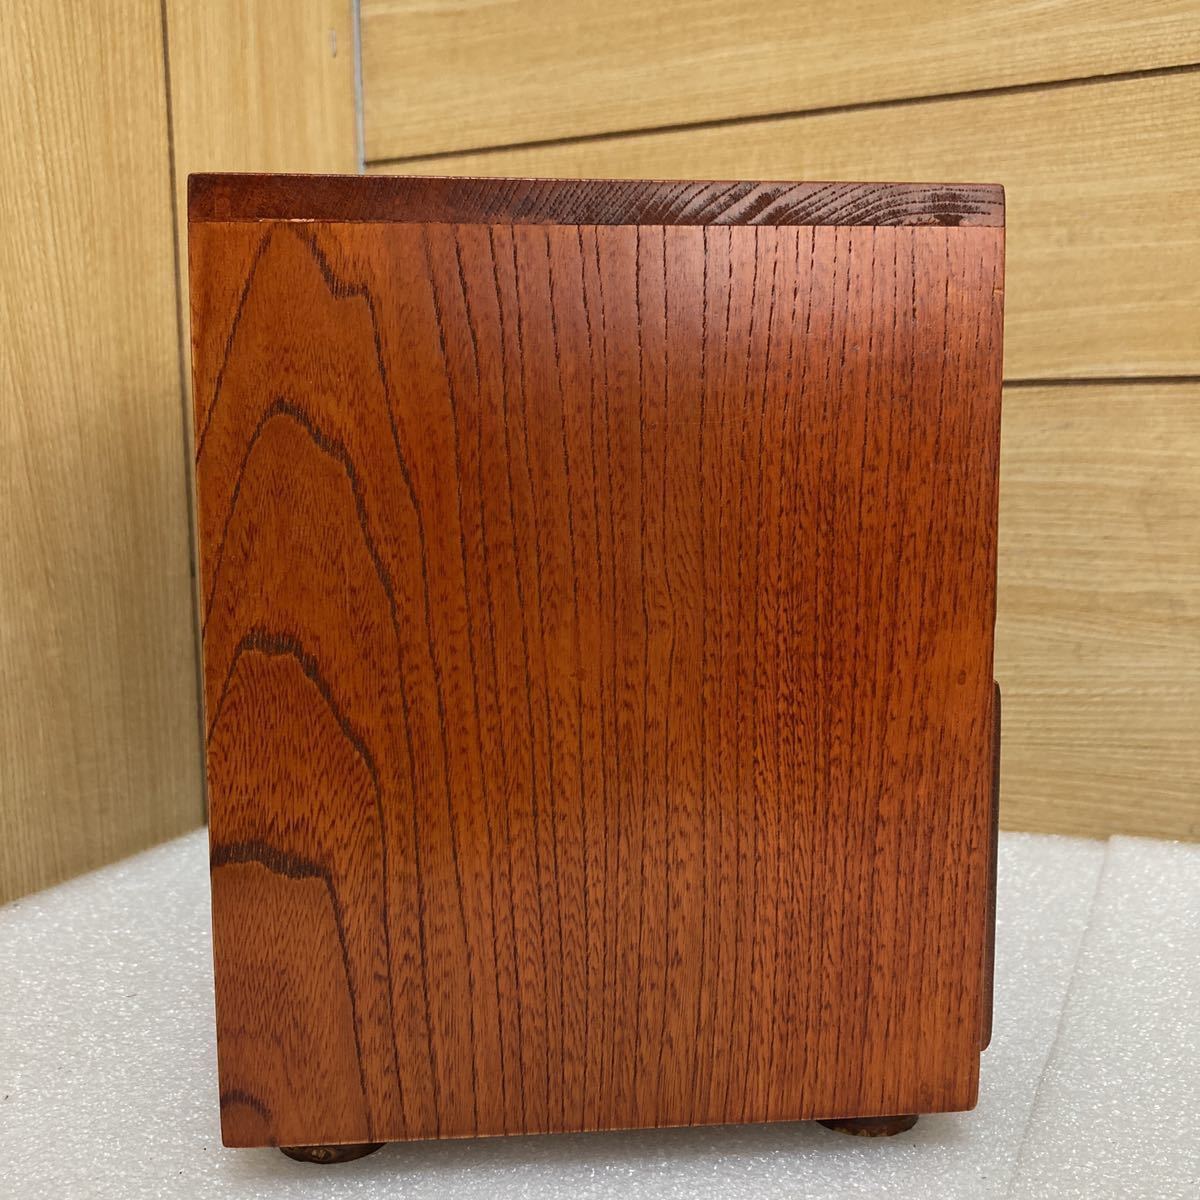 GXL9482 из дерева бардачок выдвижной ящик дерево коробка мир мебель Showa Retro античный высота примерно 21cm ширина примерно 26cm глубина примерно 16.5cm текущее состояние товар 1102